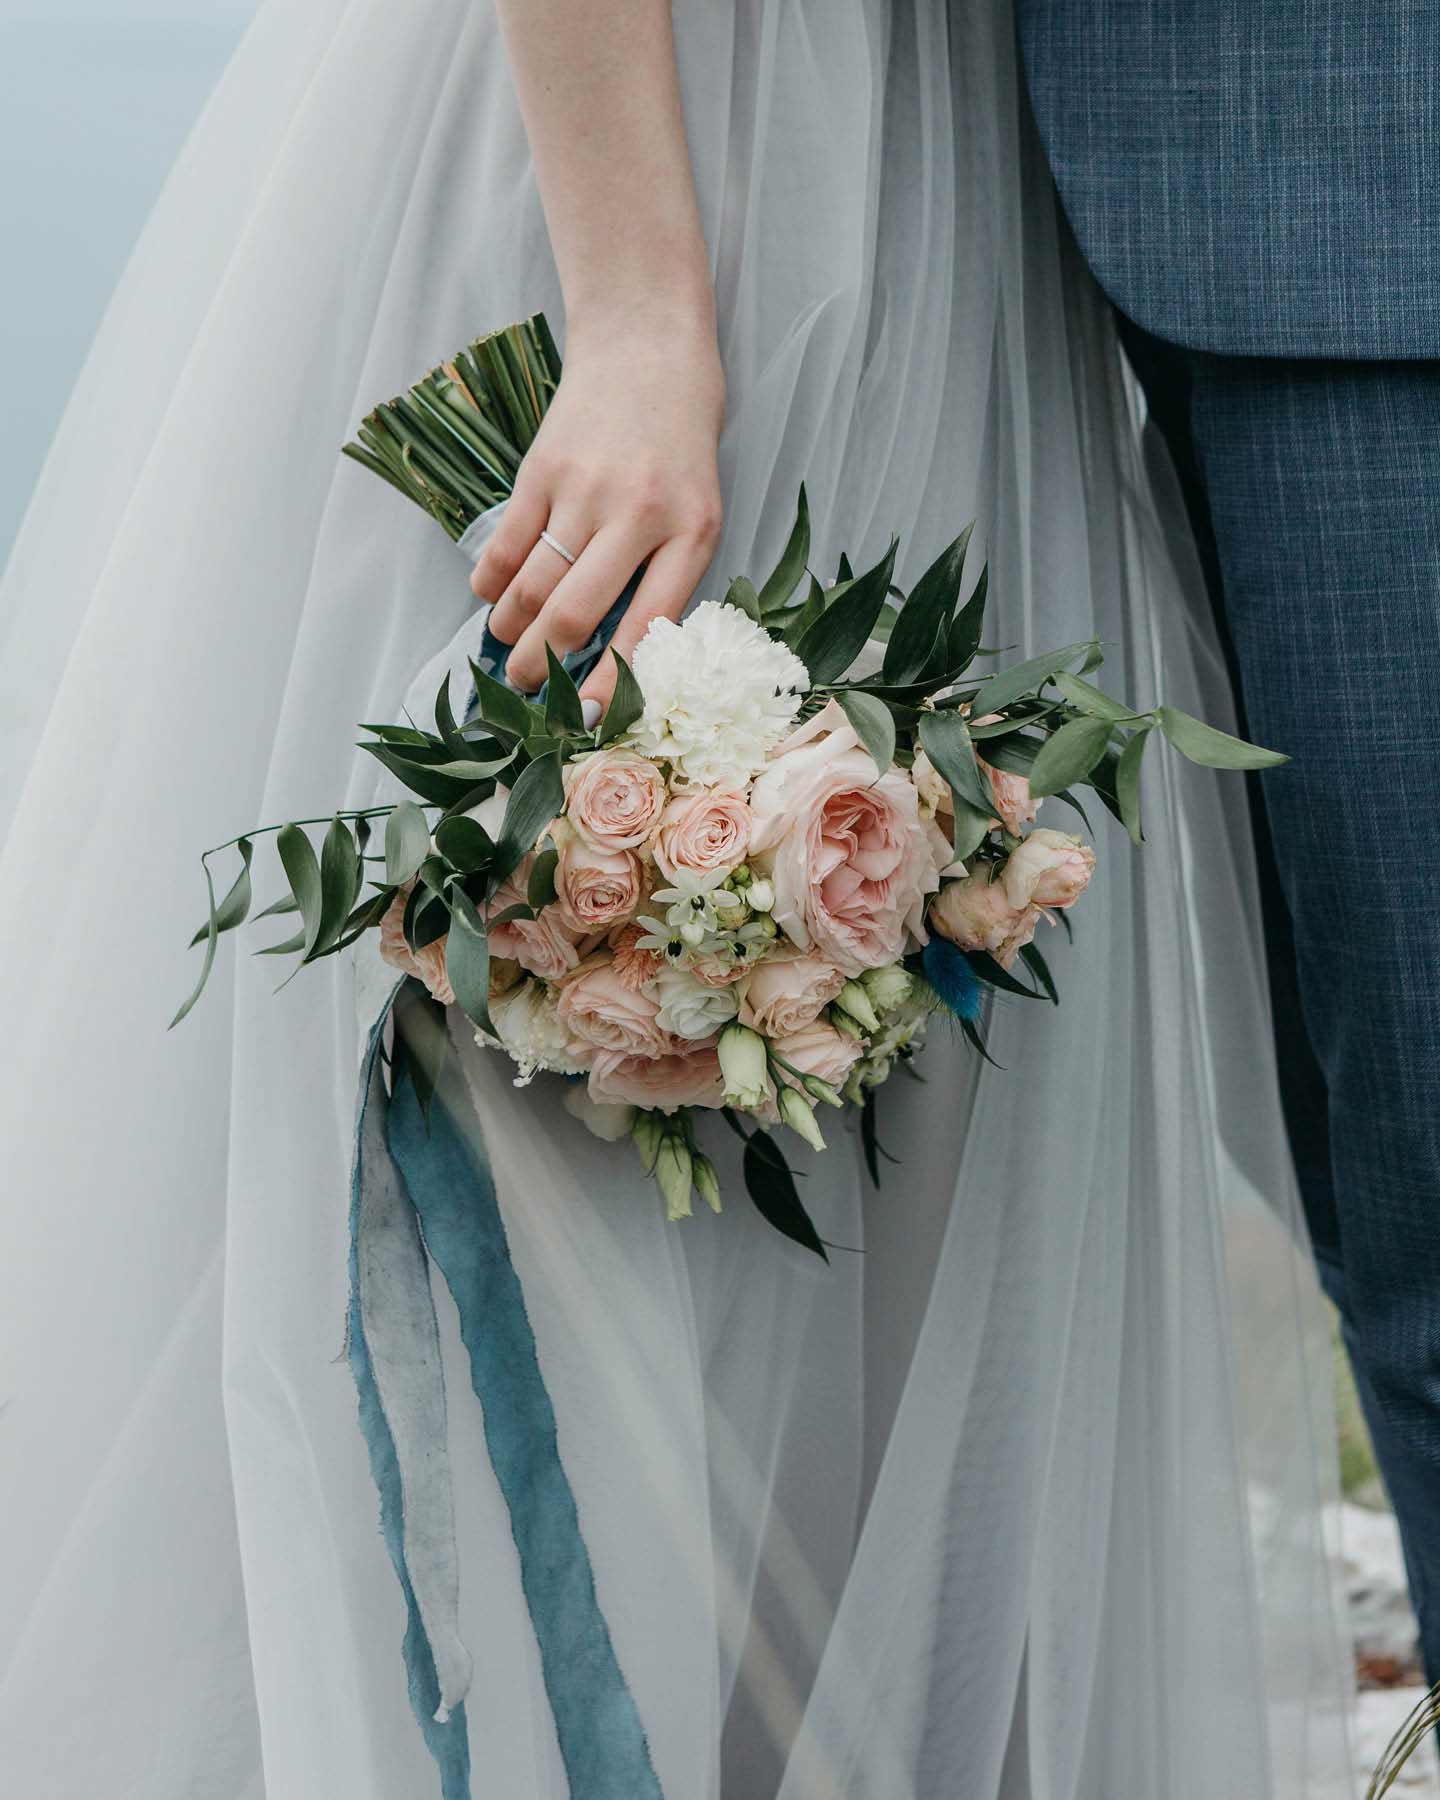 Brautstrauß aus Rosen in Weiß und Rosa vor hellblauem Kleid